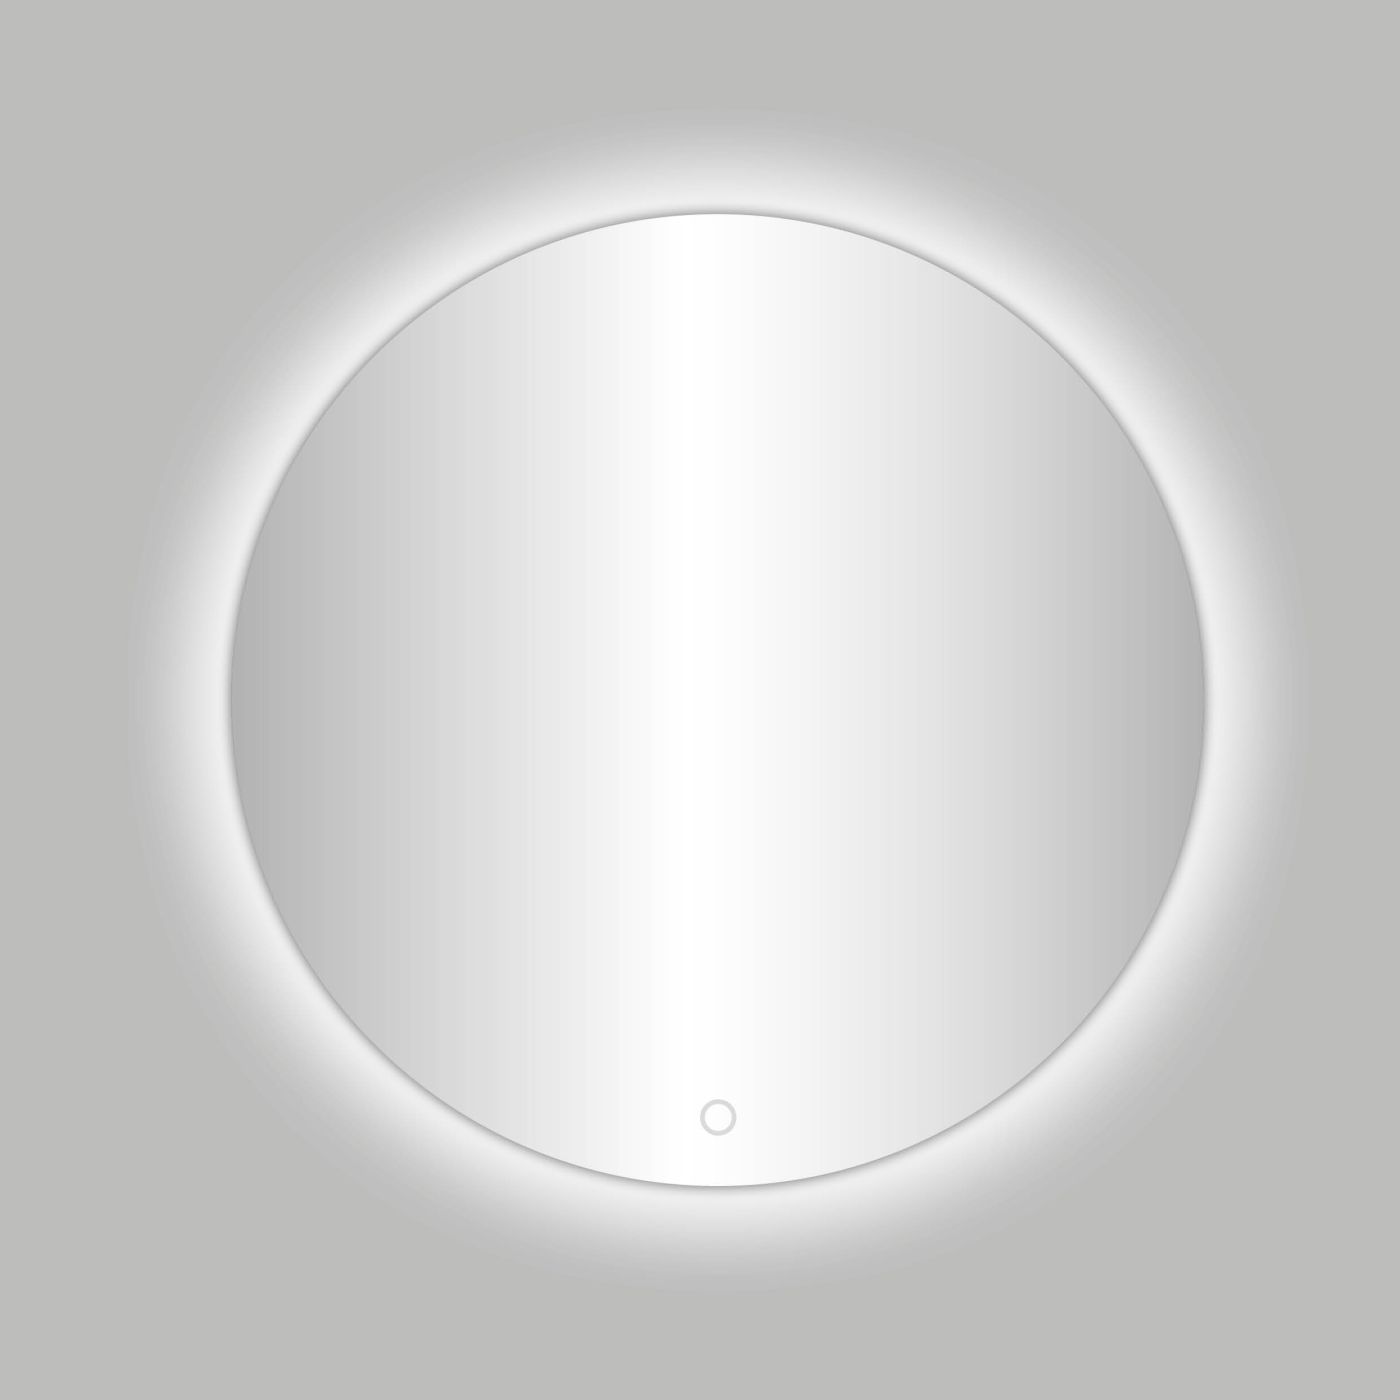 Best Design Ingiro ronde spiegel inclusief LED verlichting Ø 60 cm